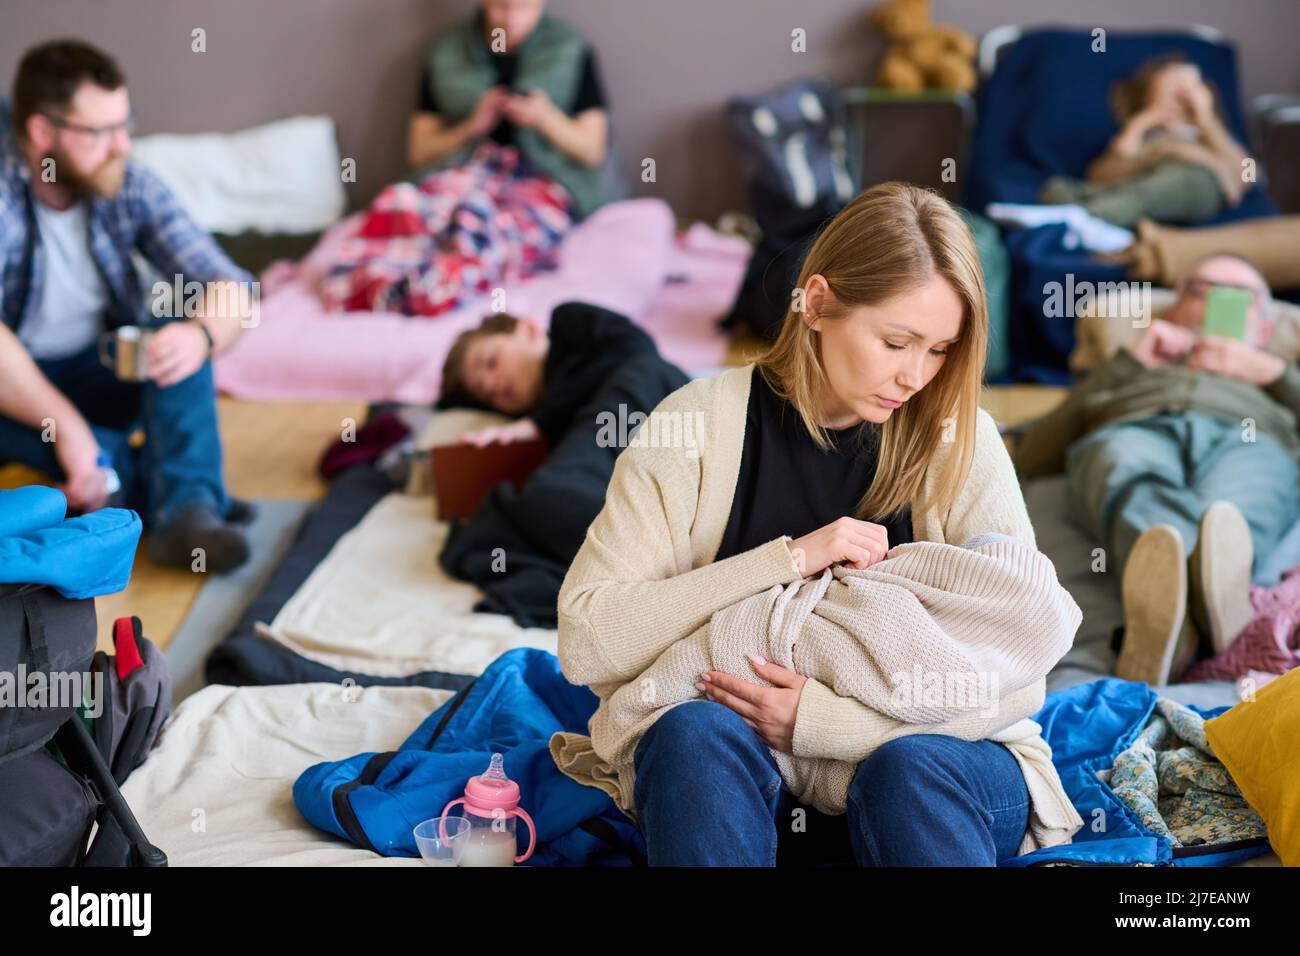 Giovane donna bionda rifugiata lulling bambino avvolto in caldo plaid mentre si siede a letto preparato da volontari per le persone in difficoltà Foto Stock